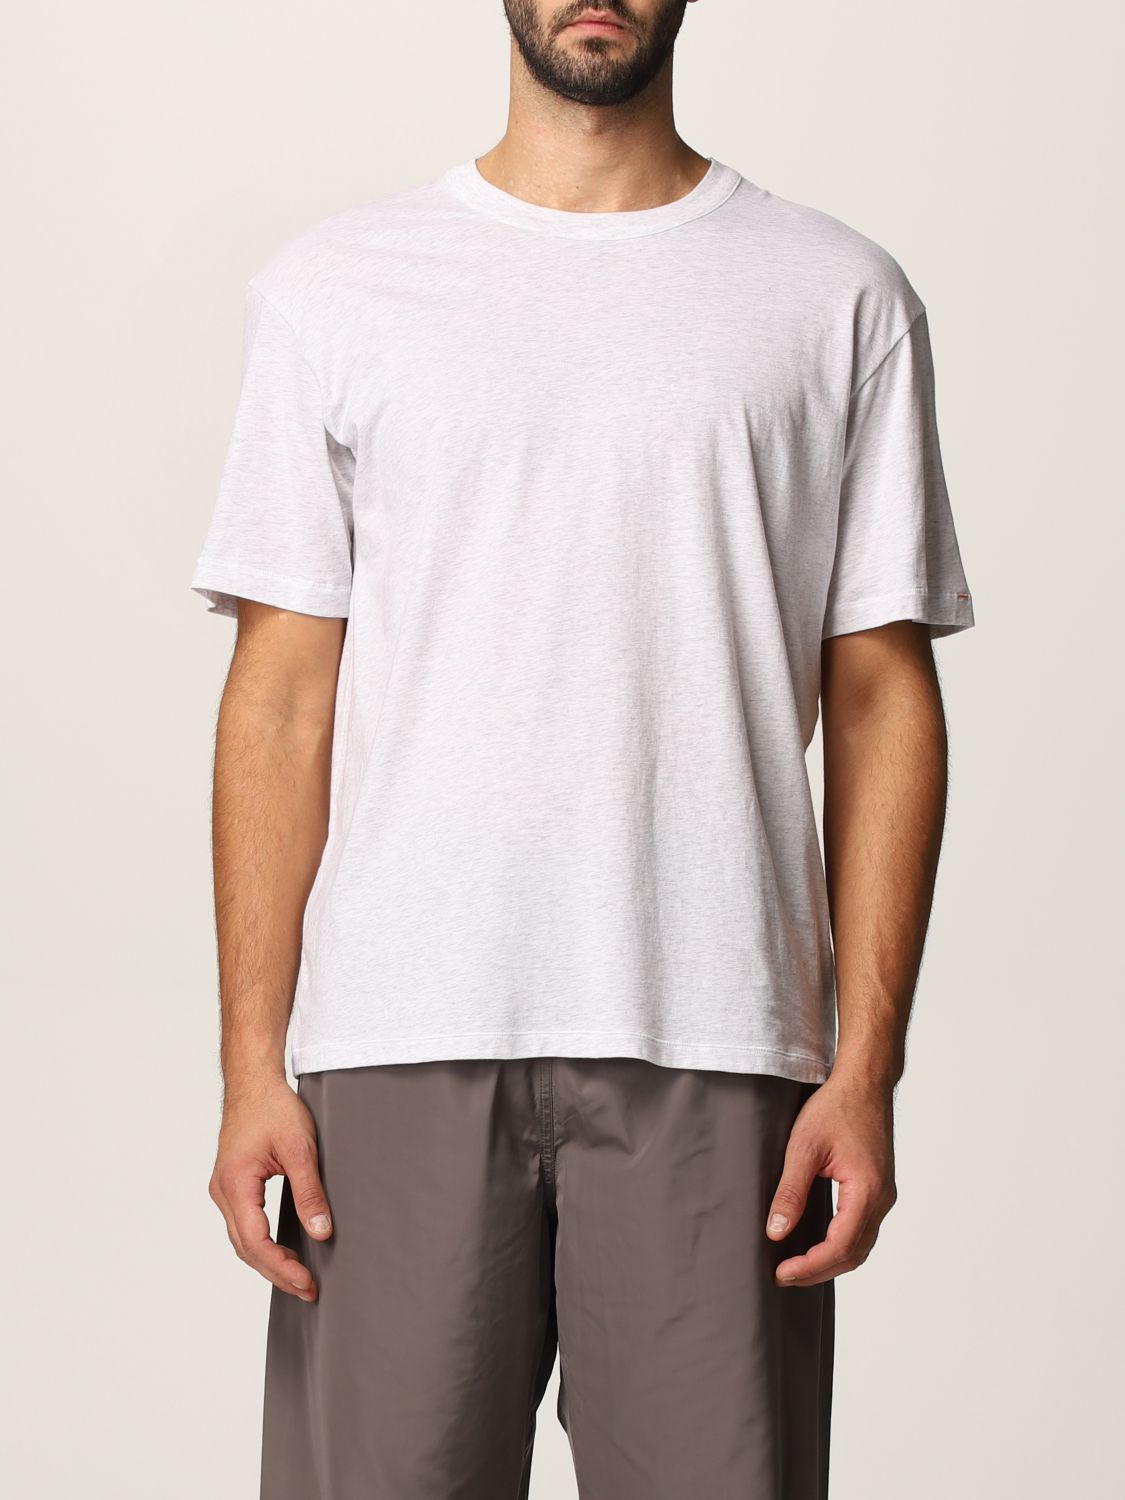 T-Shirt Heron Preston For Calvin Klein: T-shirt herren Orange 2.0-heron Preston X Calvin Klein schwarz 3